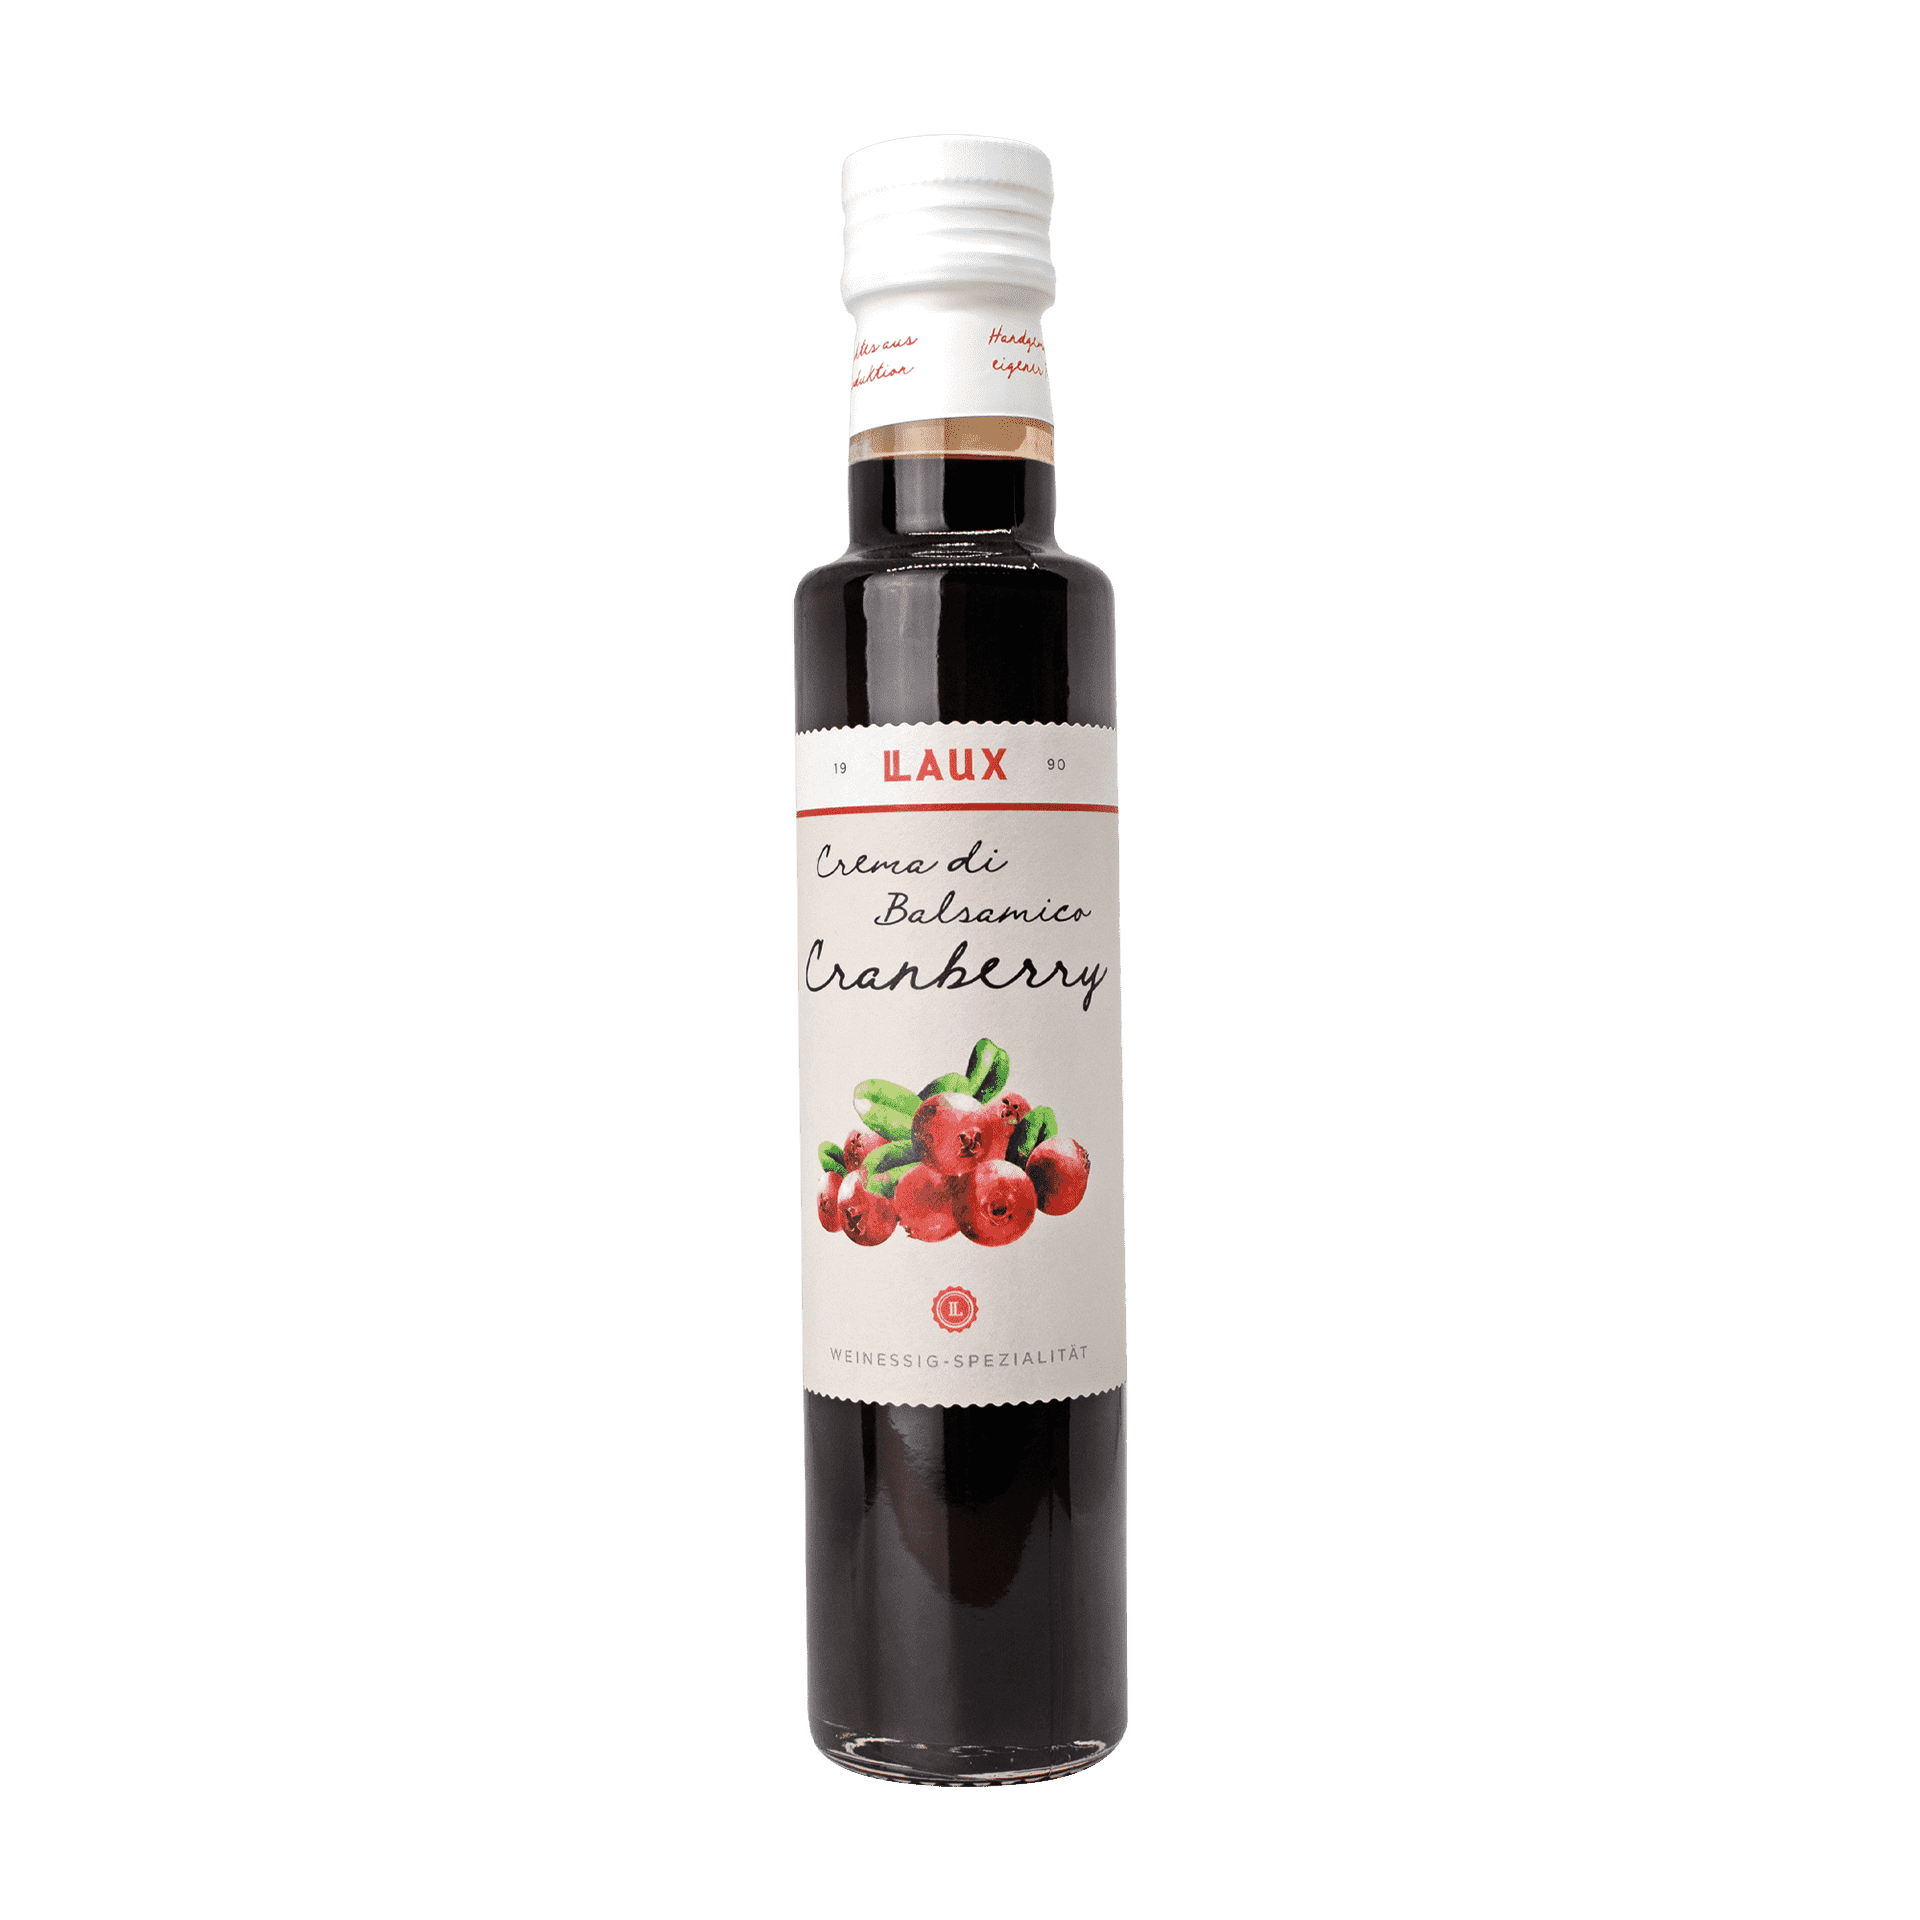 Crema di Balsamico Cranberry - Weinessig-Spezialität mit Johannisbeere - 250 ml Flasche